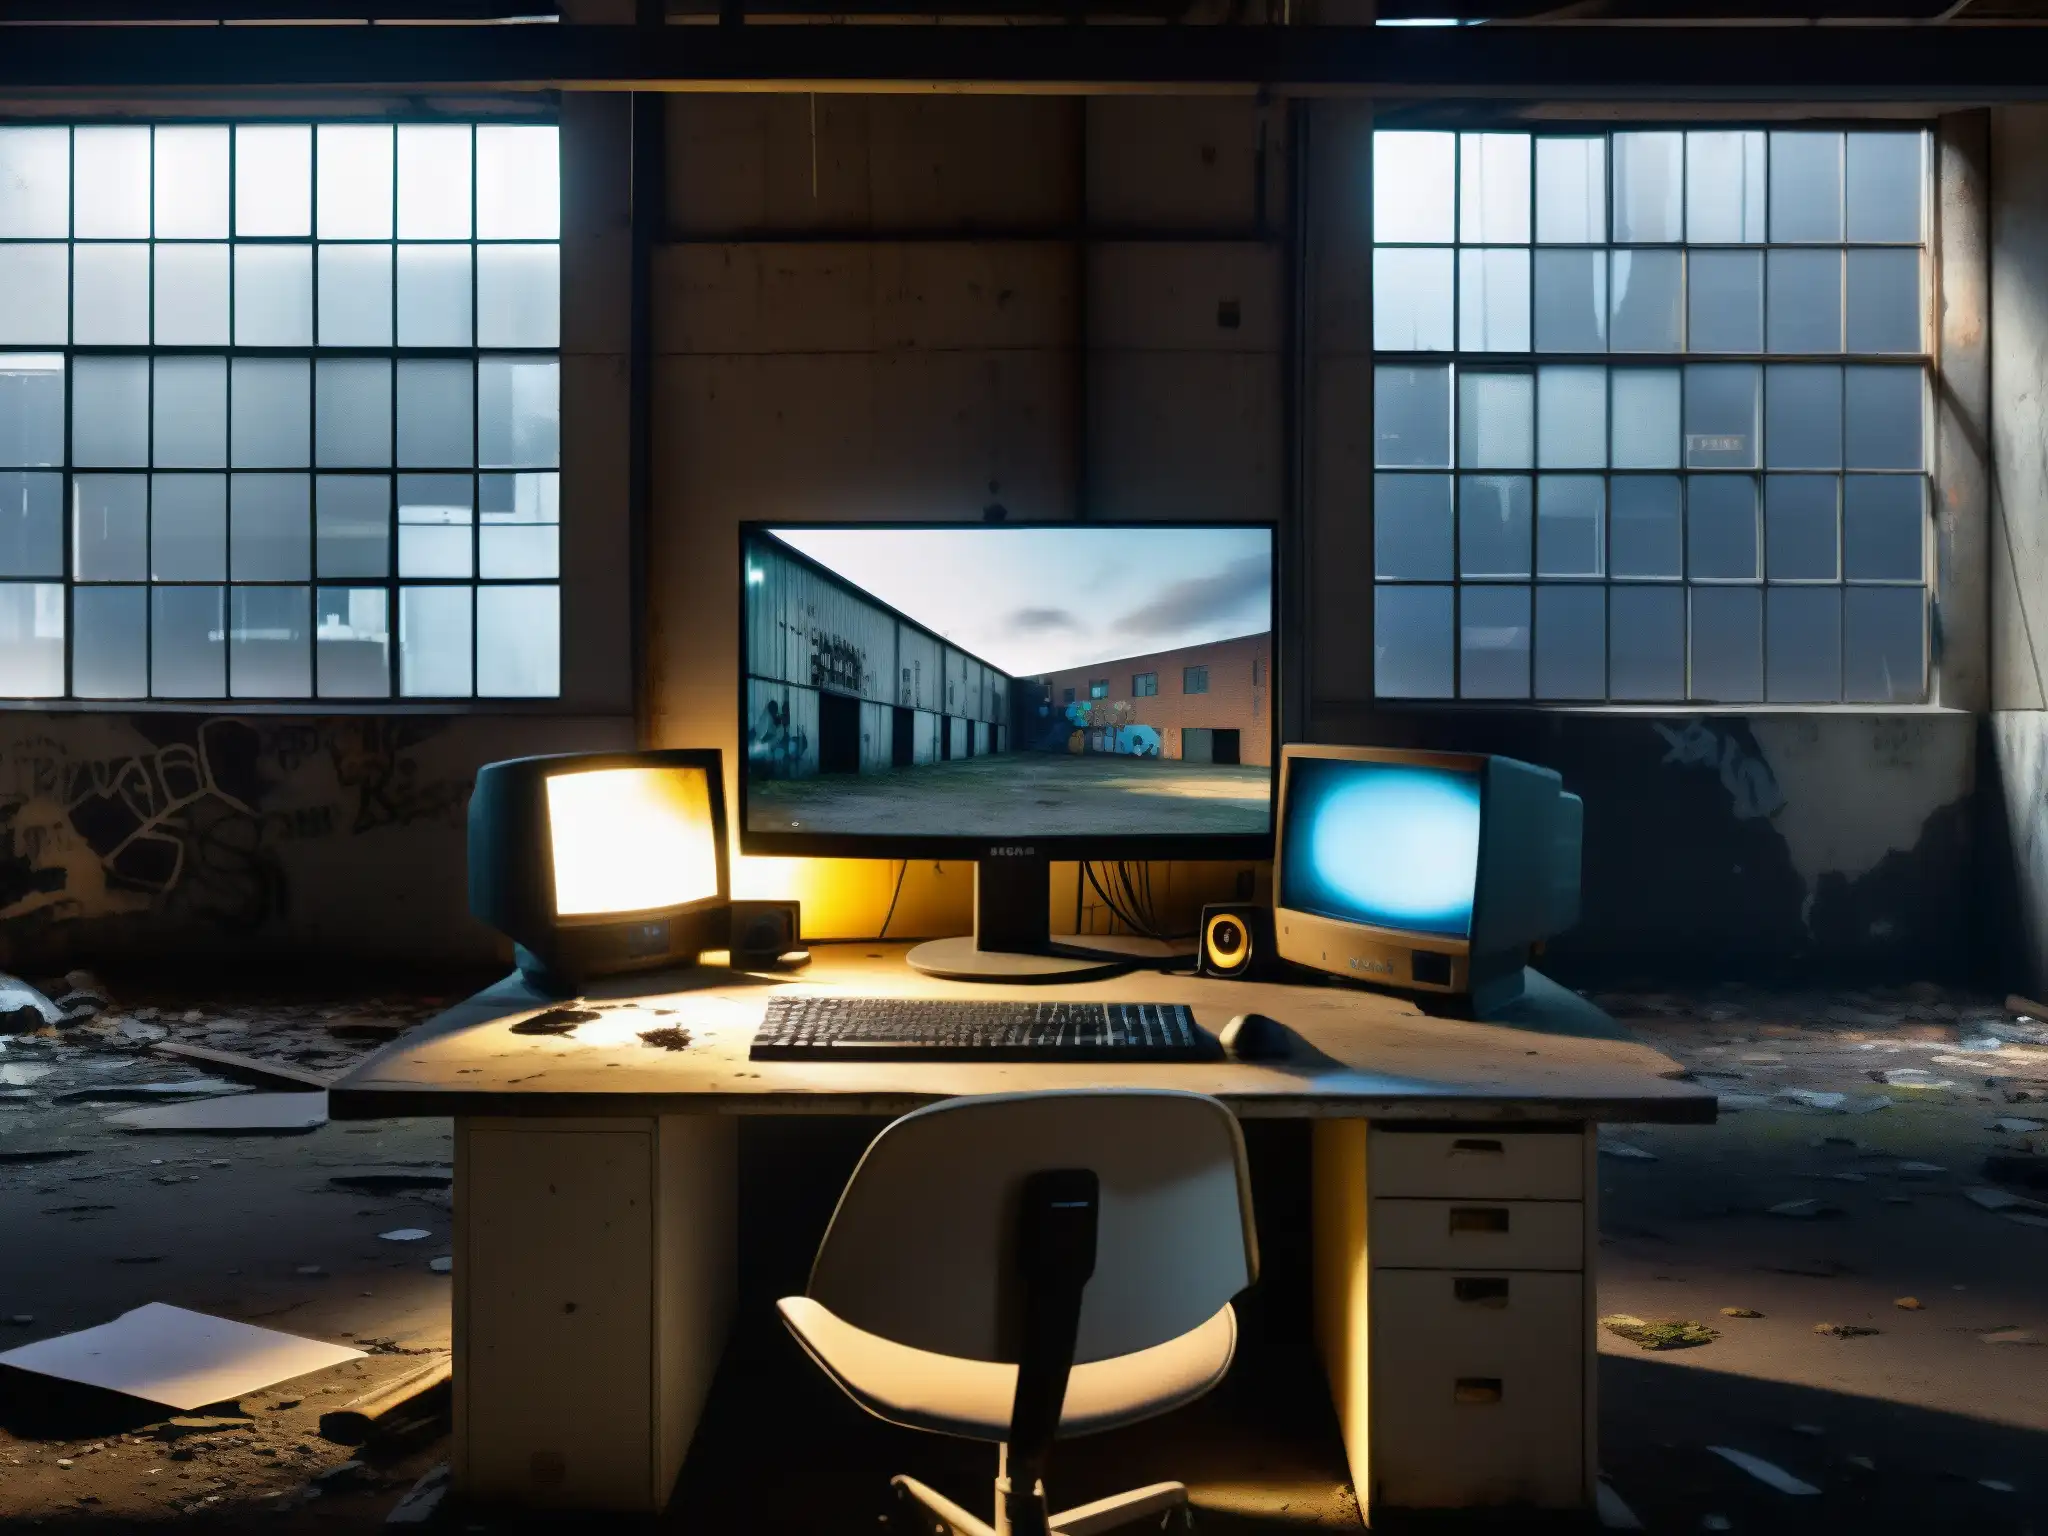 En la penumbra de un almacén abandonado, un monitor destella, evocando leyendas urbanas de hackers fantasma en la red